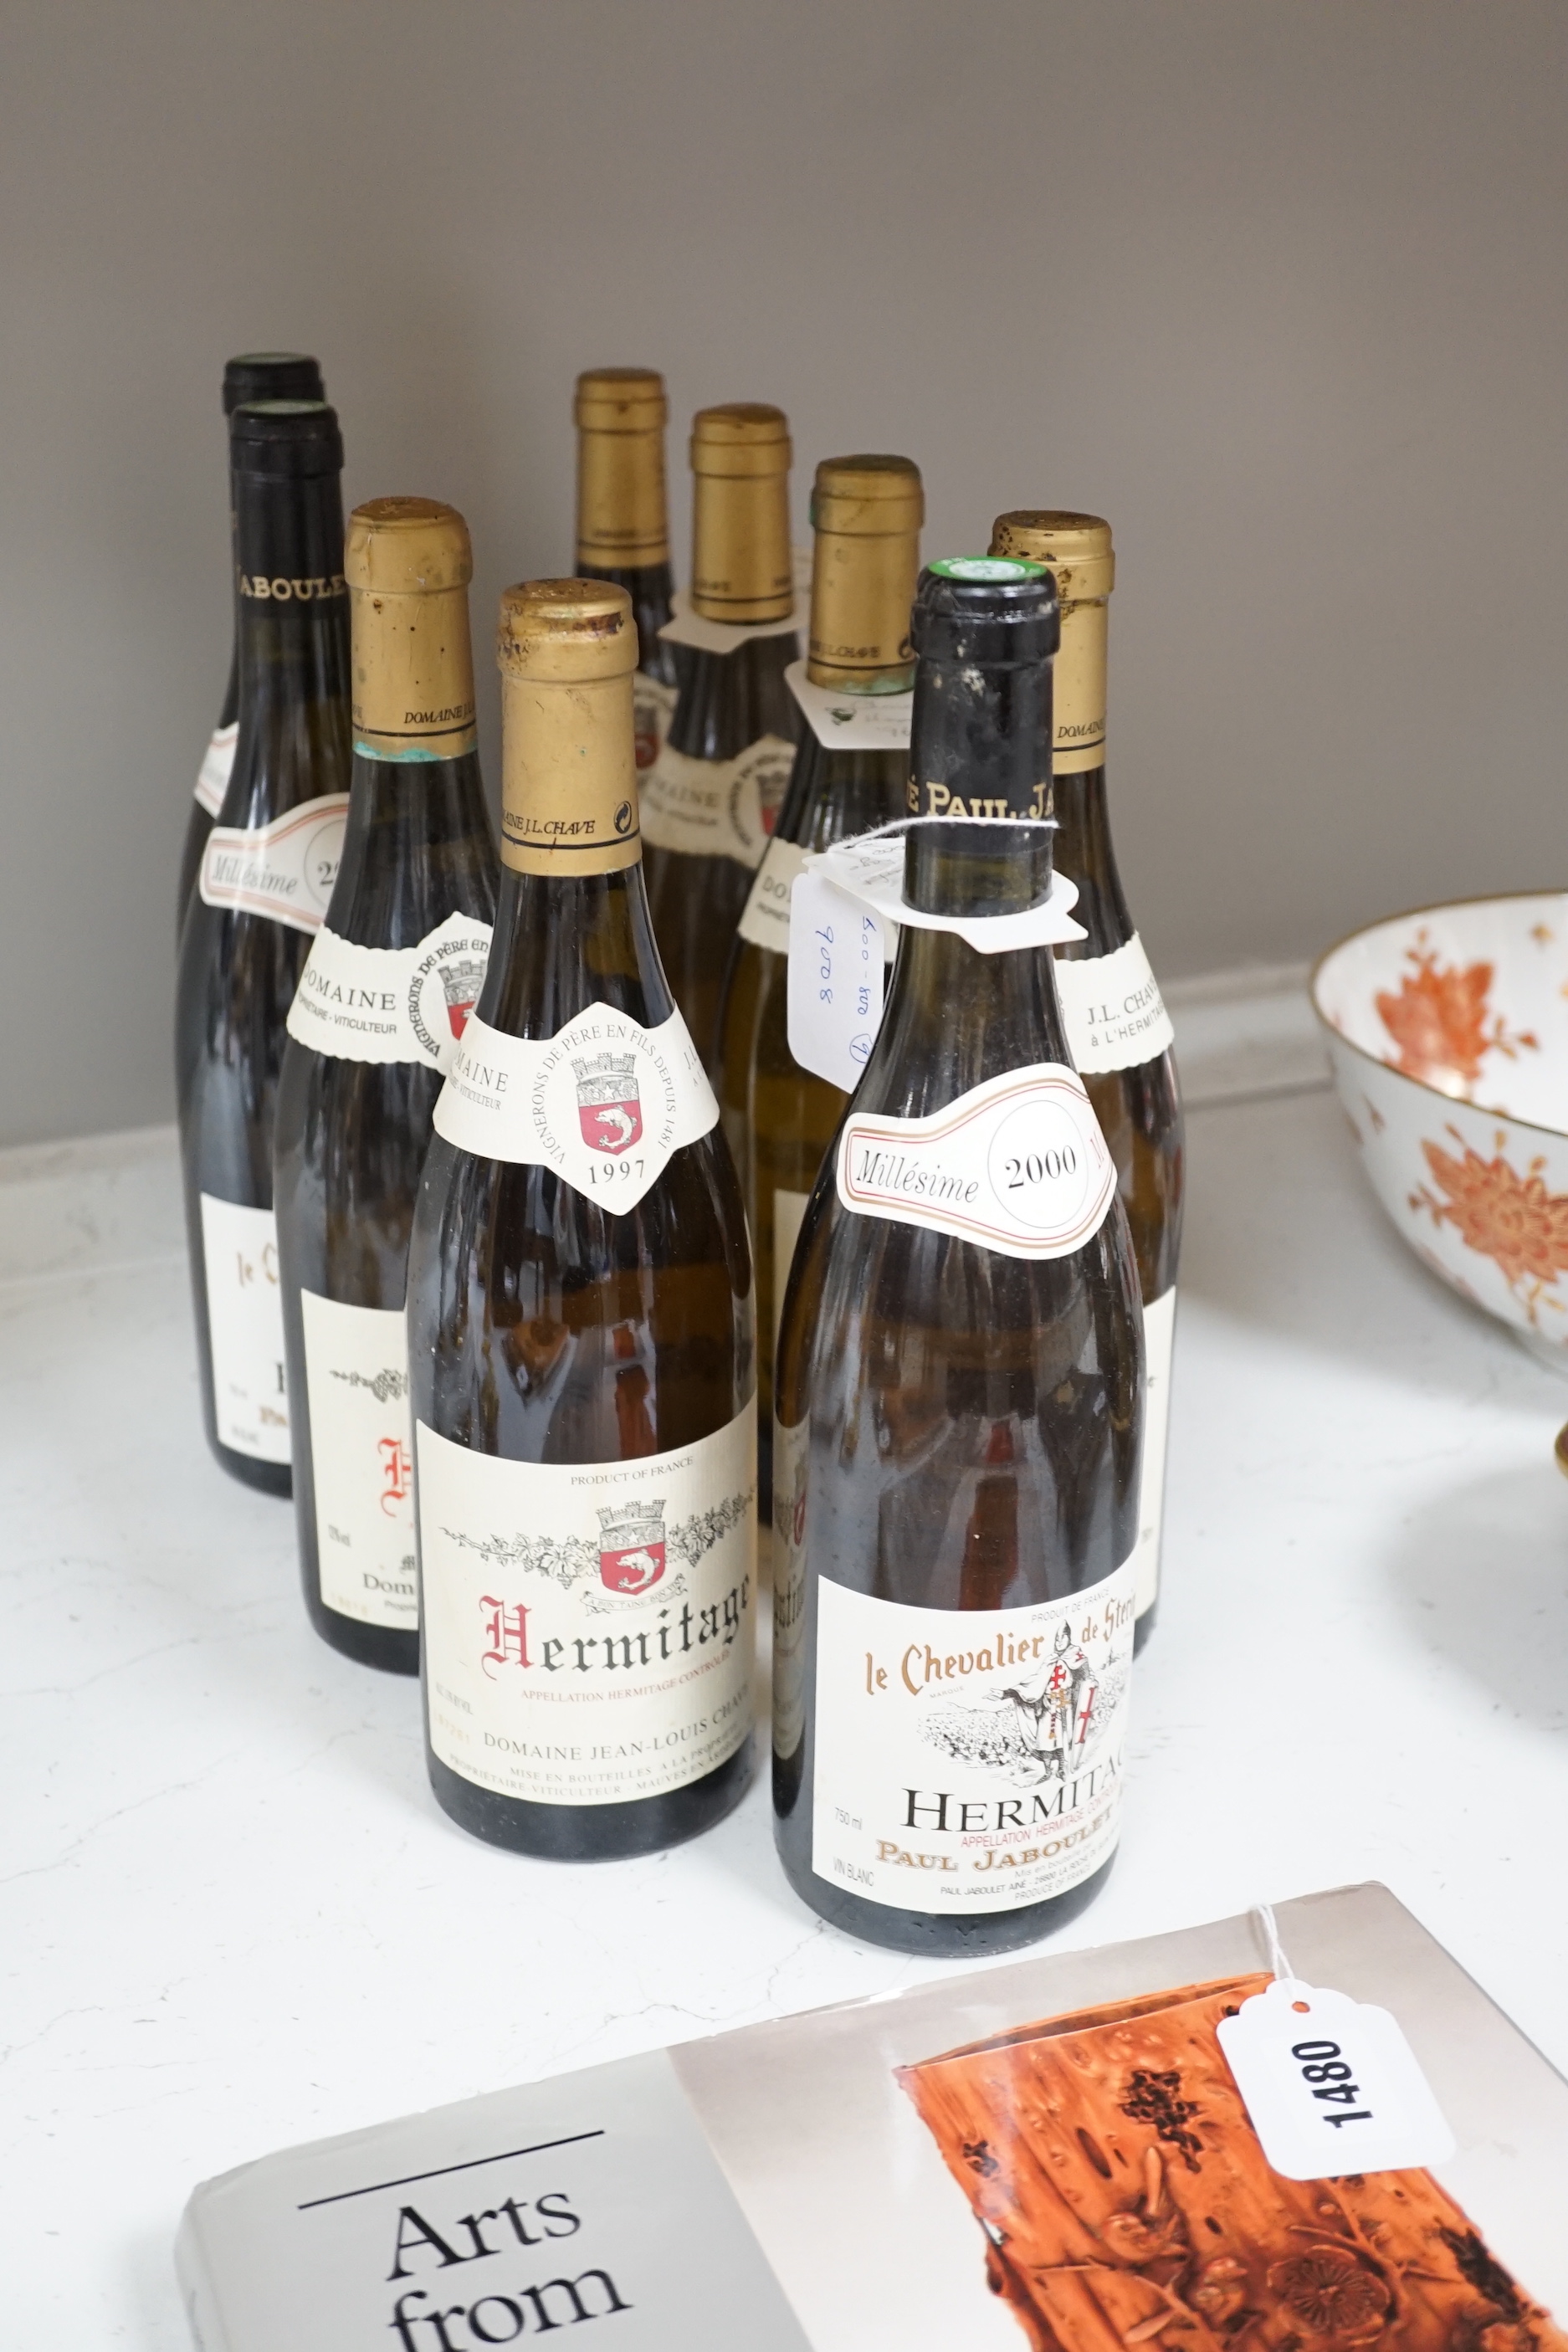 Nine bottles of Hermitage, DomaineJean-Louis CHAVE: two bottles 1994, three bottles 1996, one bottle 1997 and three bottles 2000